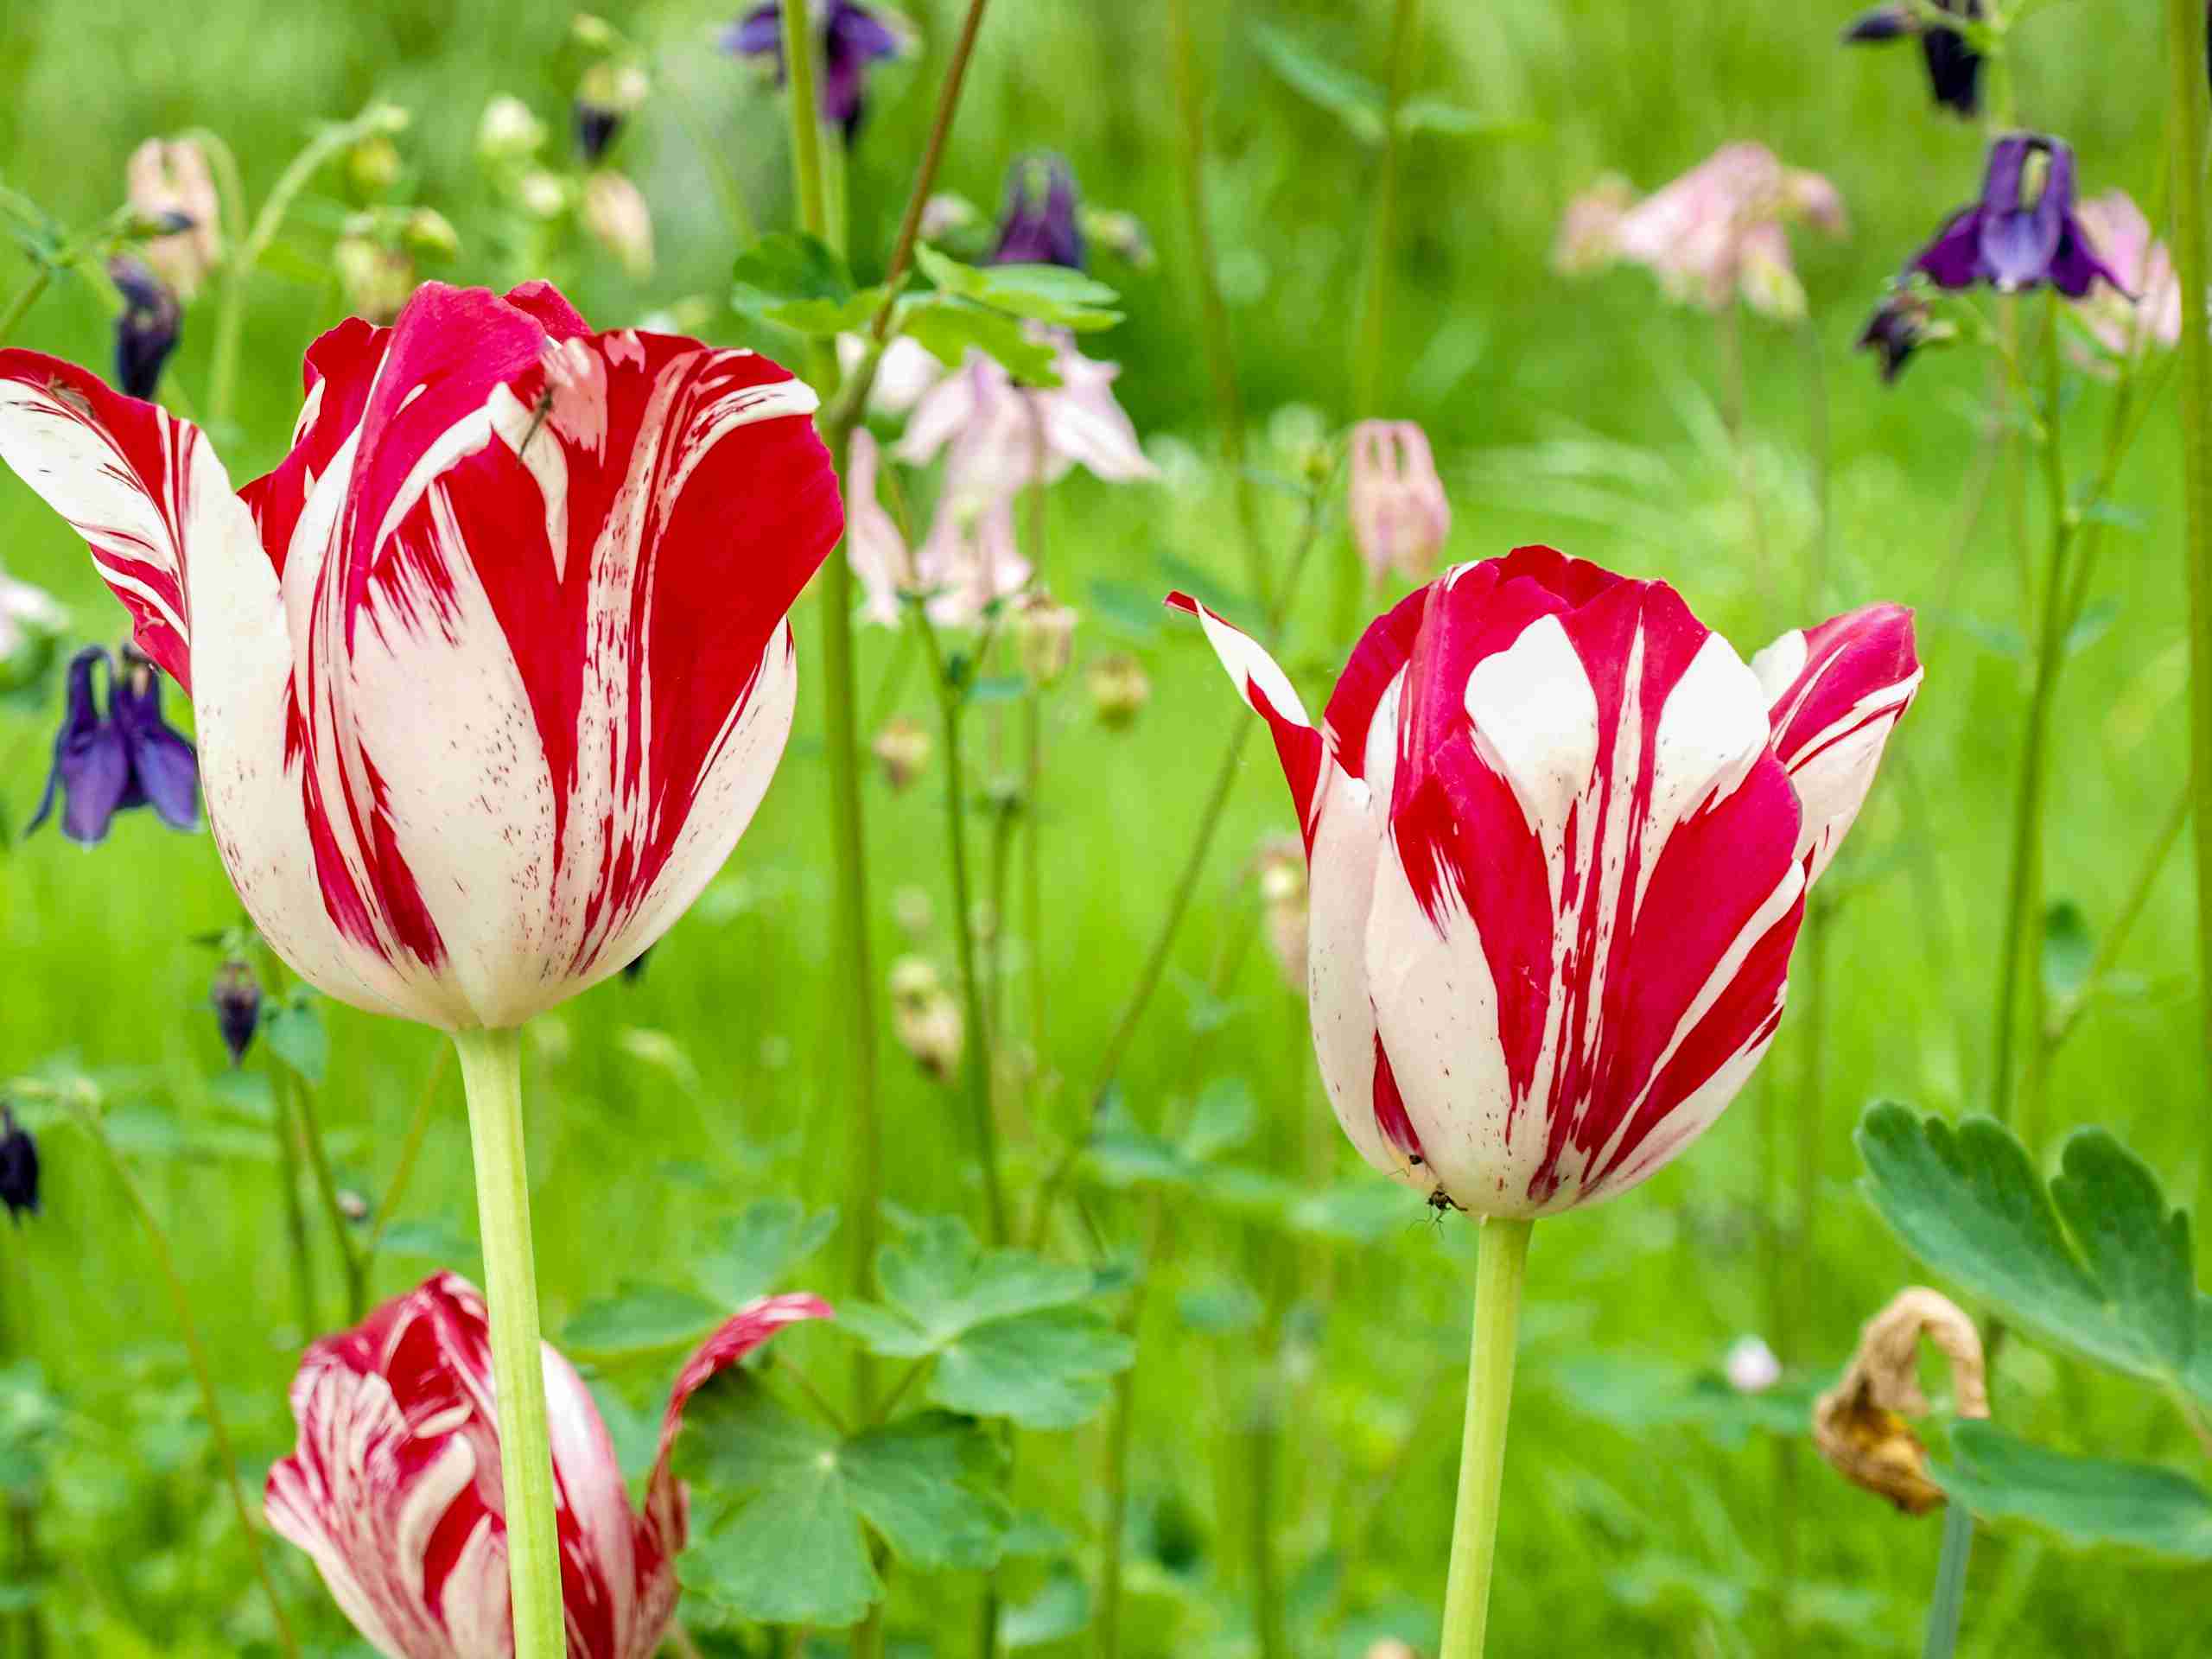 10 Tulip Varieties for the Spring Garden